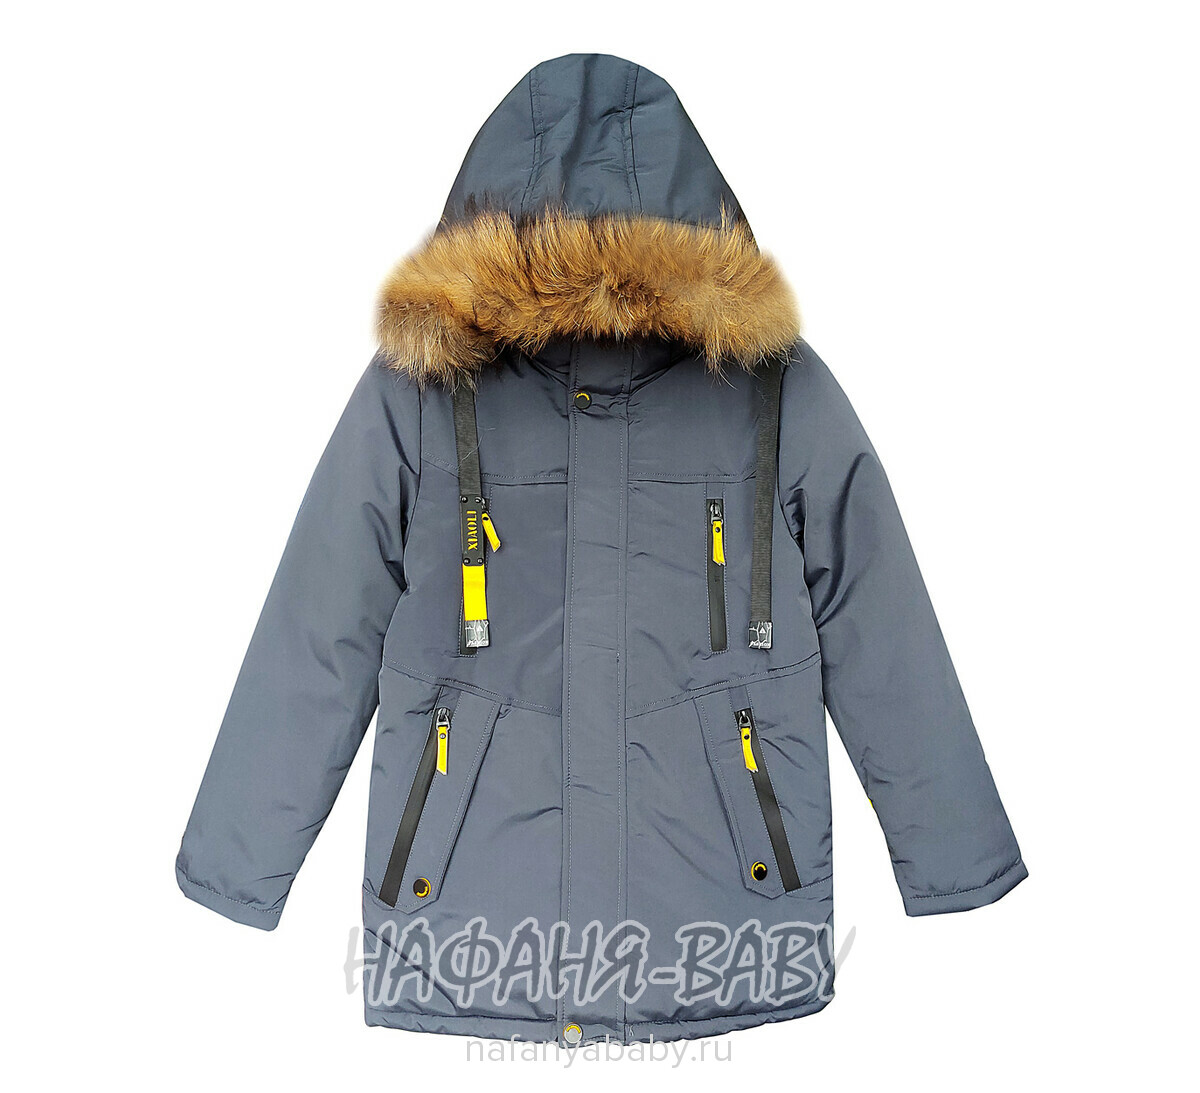 Зимняя куртка для мальчика арт: 8022, от 10 до 16 лет, цвет темно-серый, оптом Китай (Пекин)